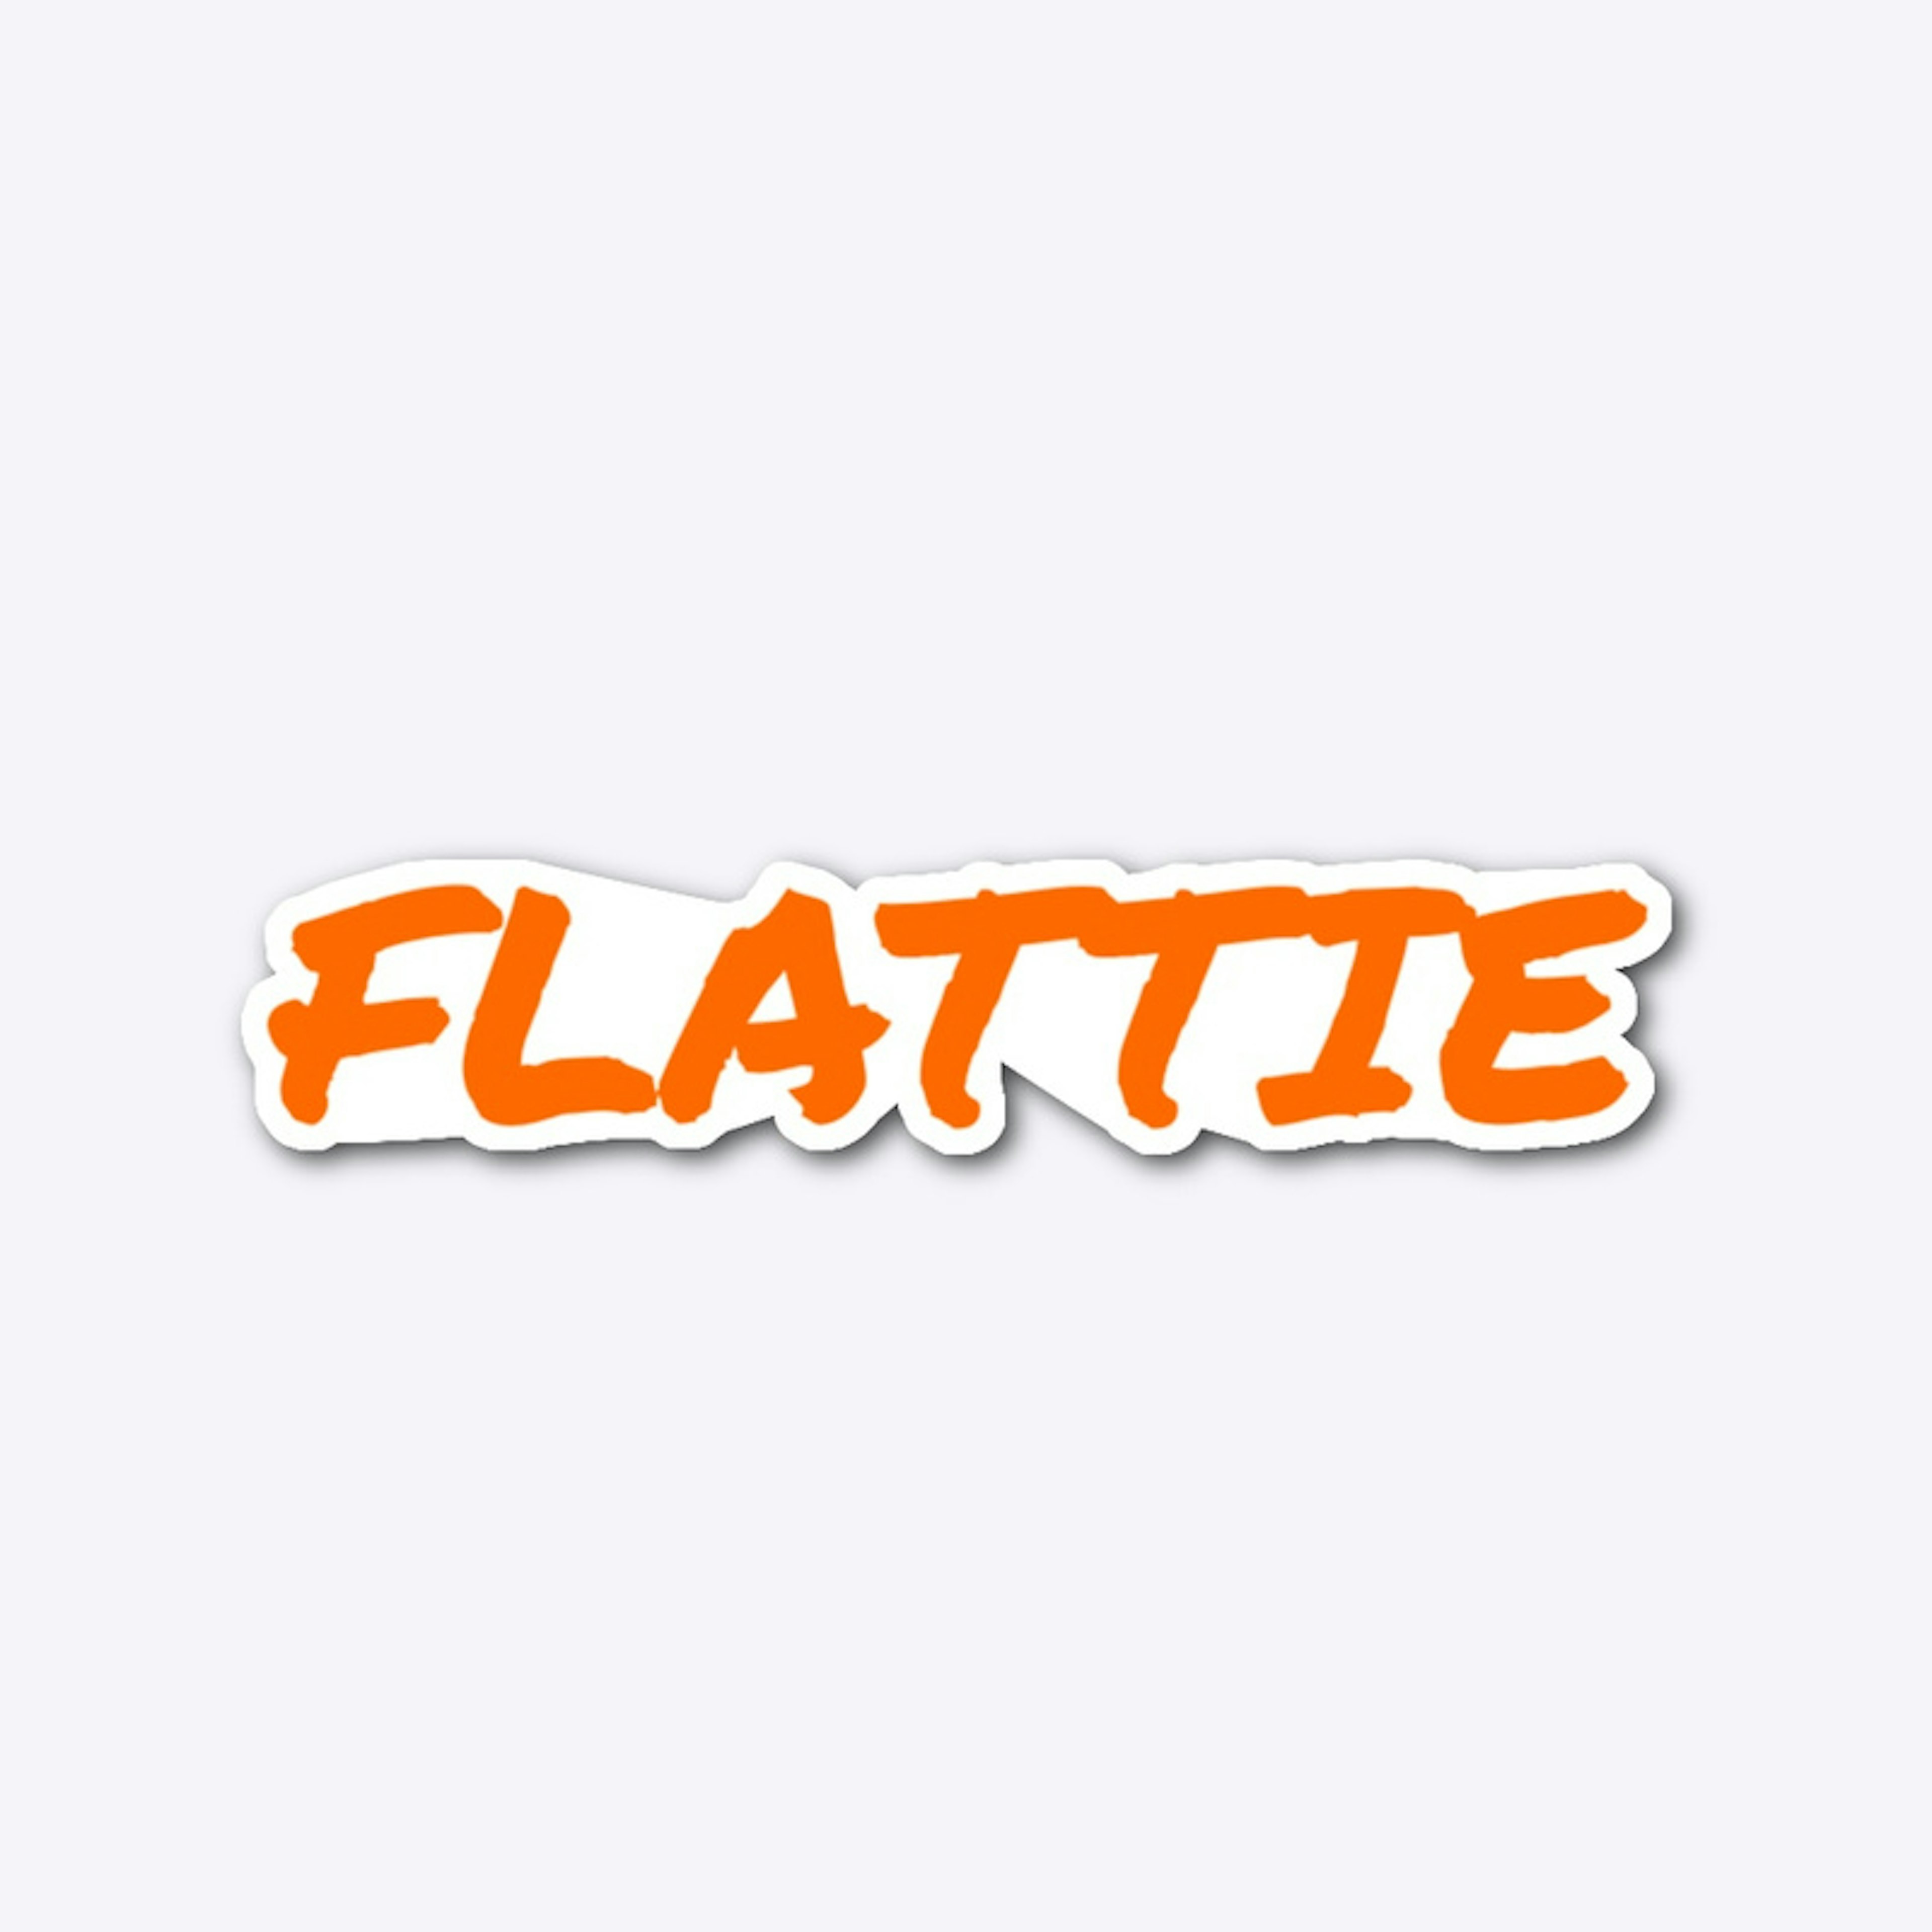 FLATTIE Sticker